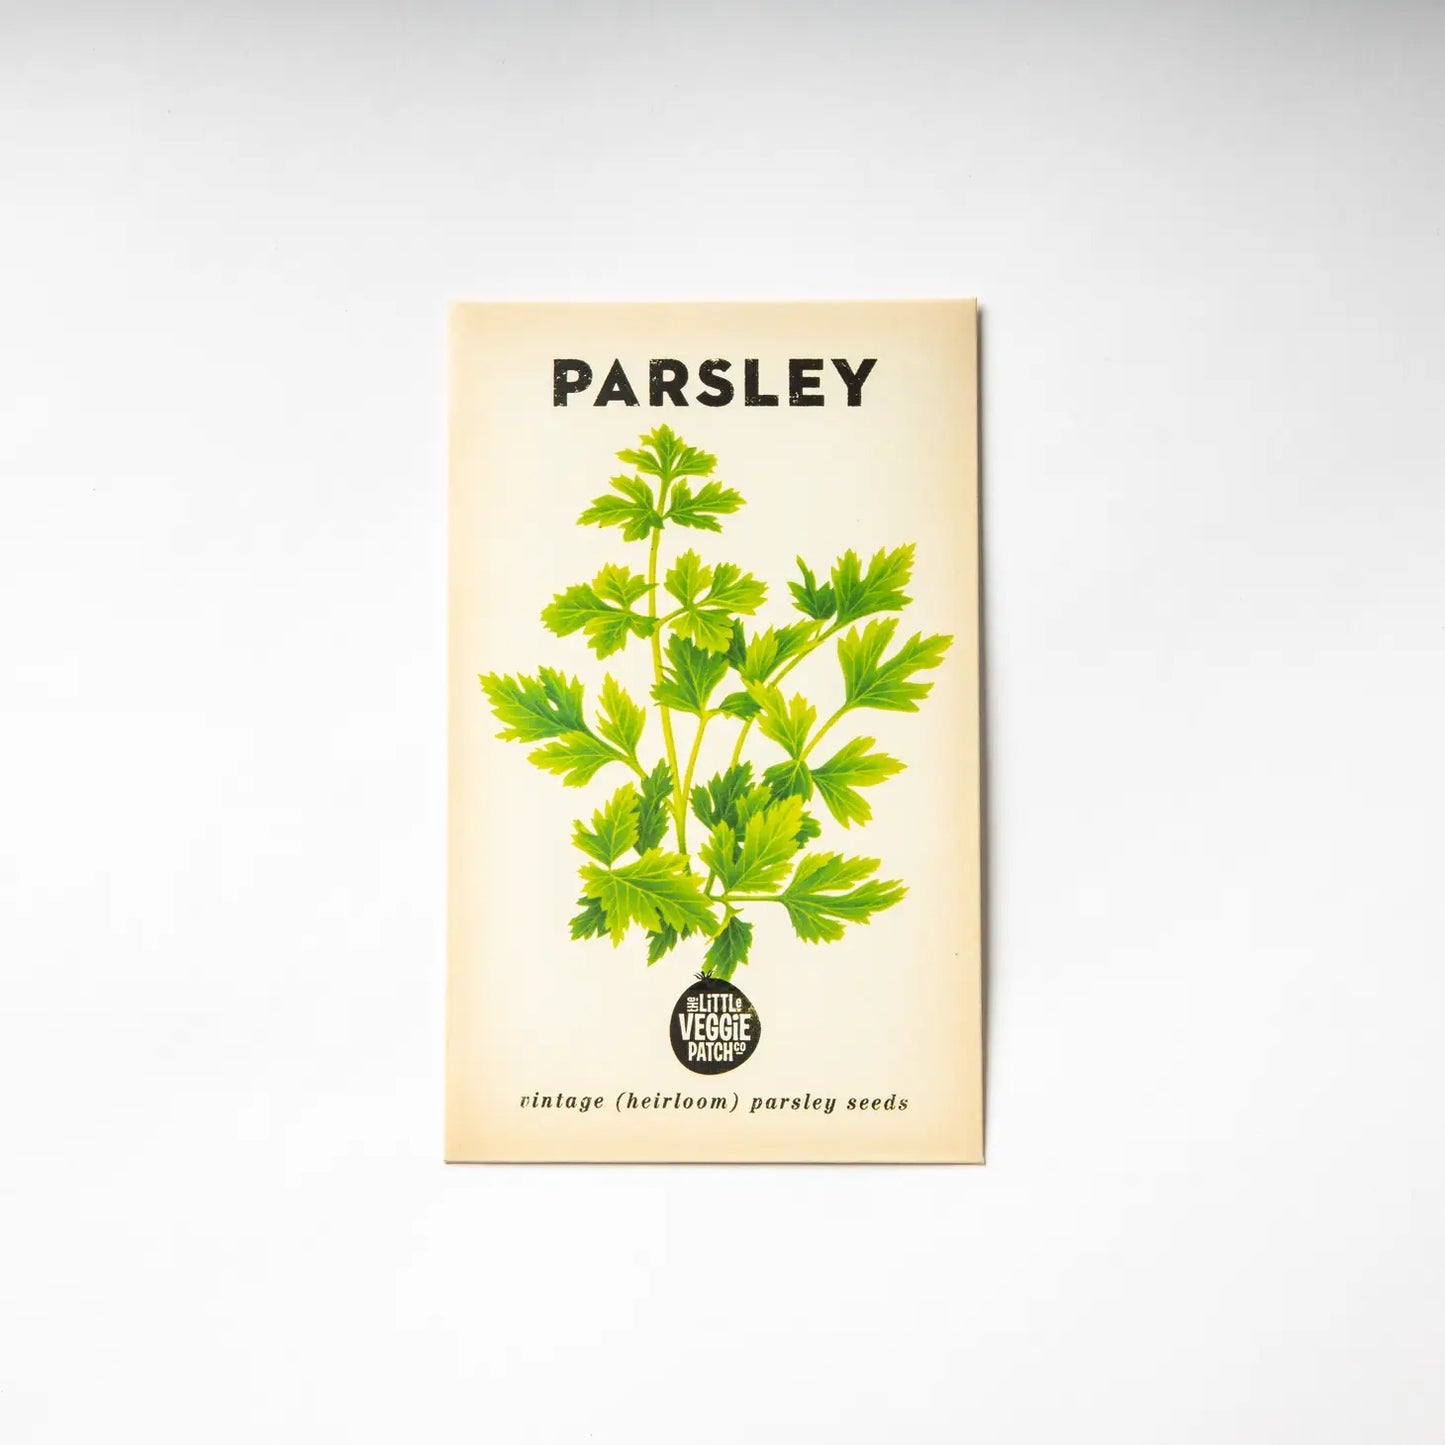 Parsley "Italian" Heirloom Seeds